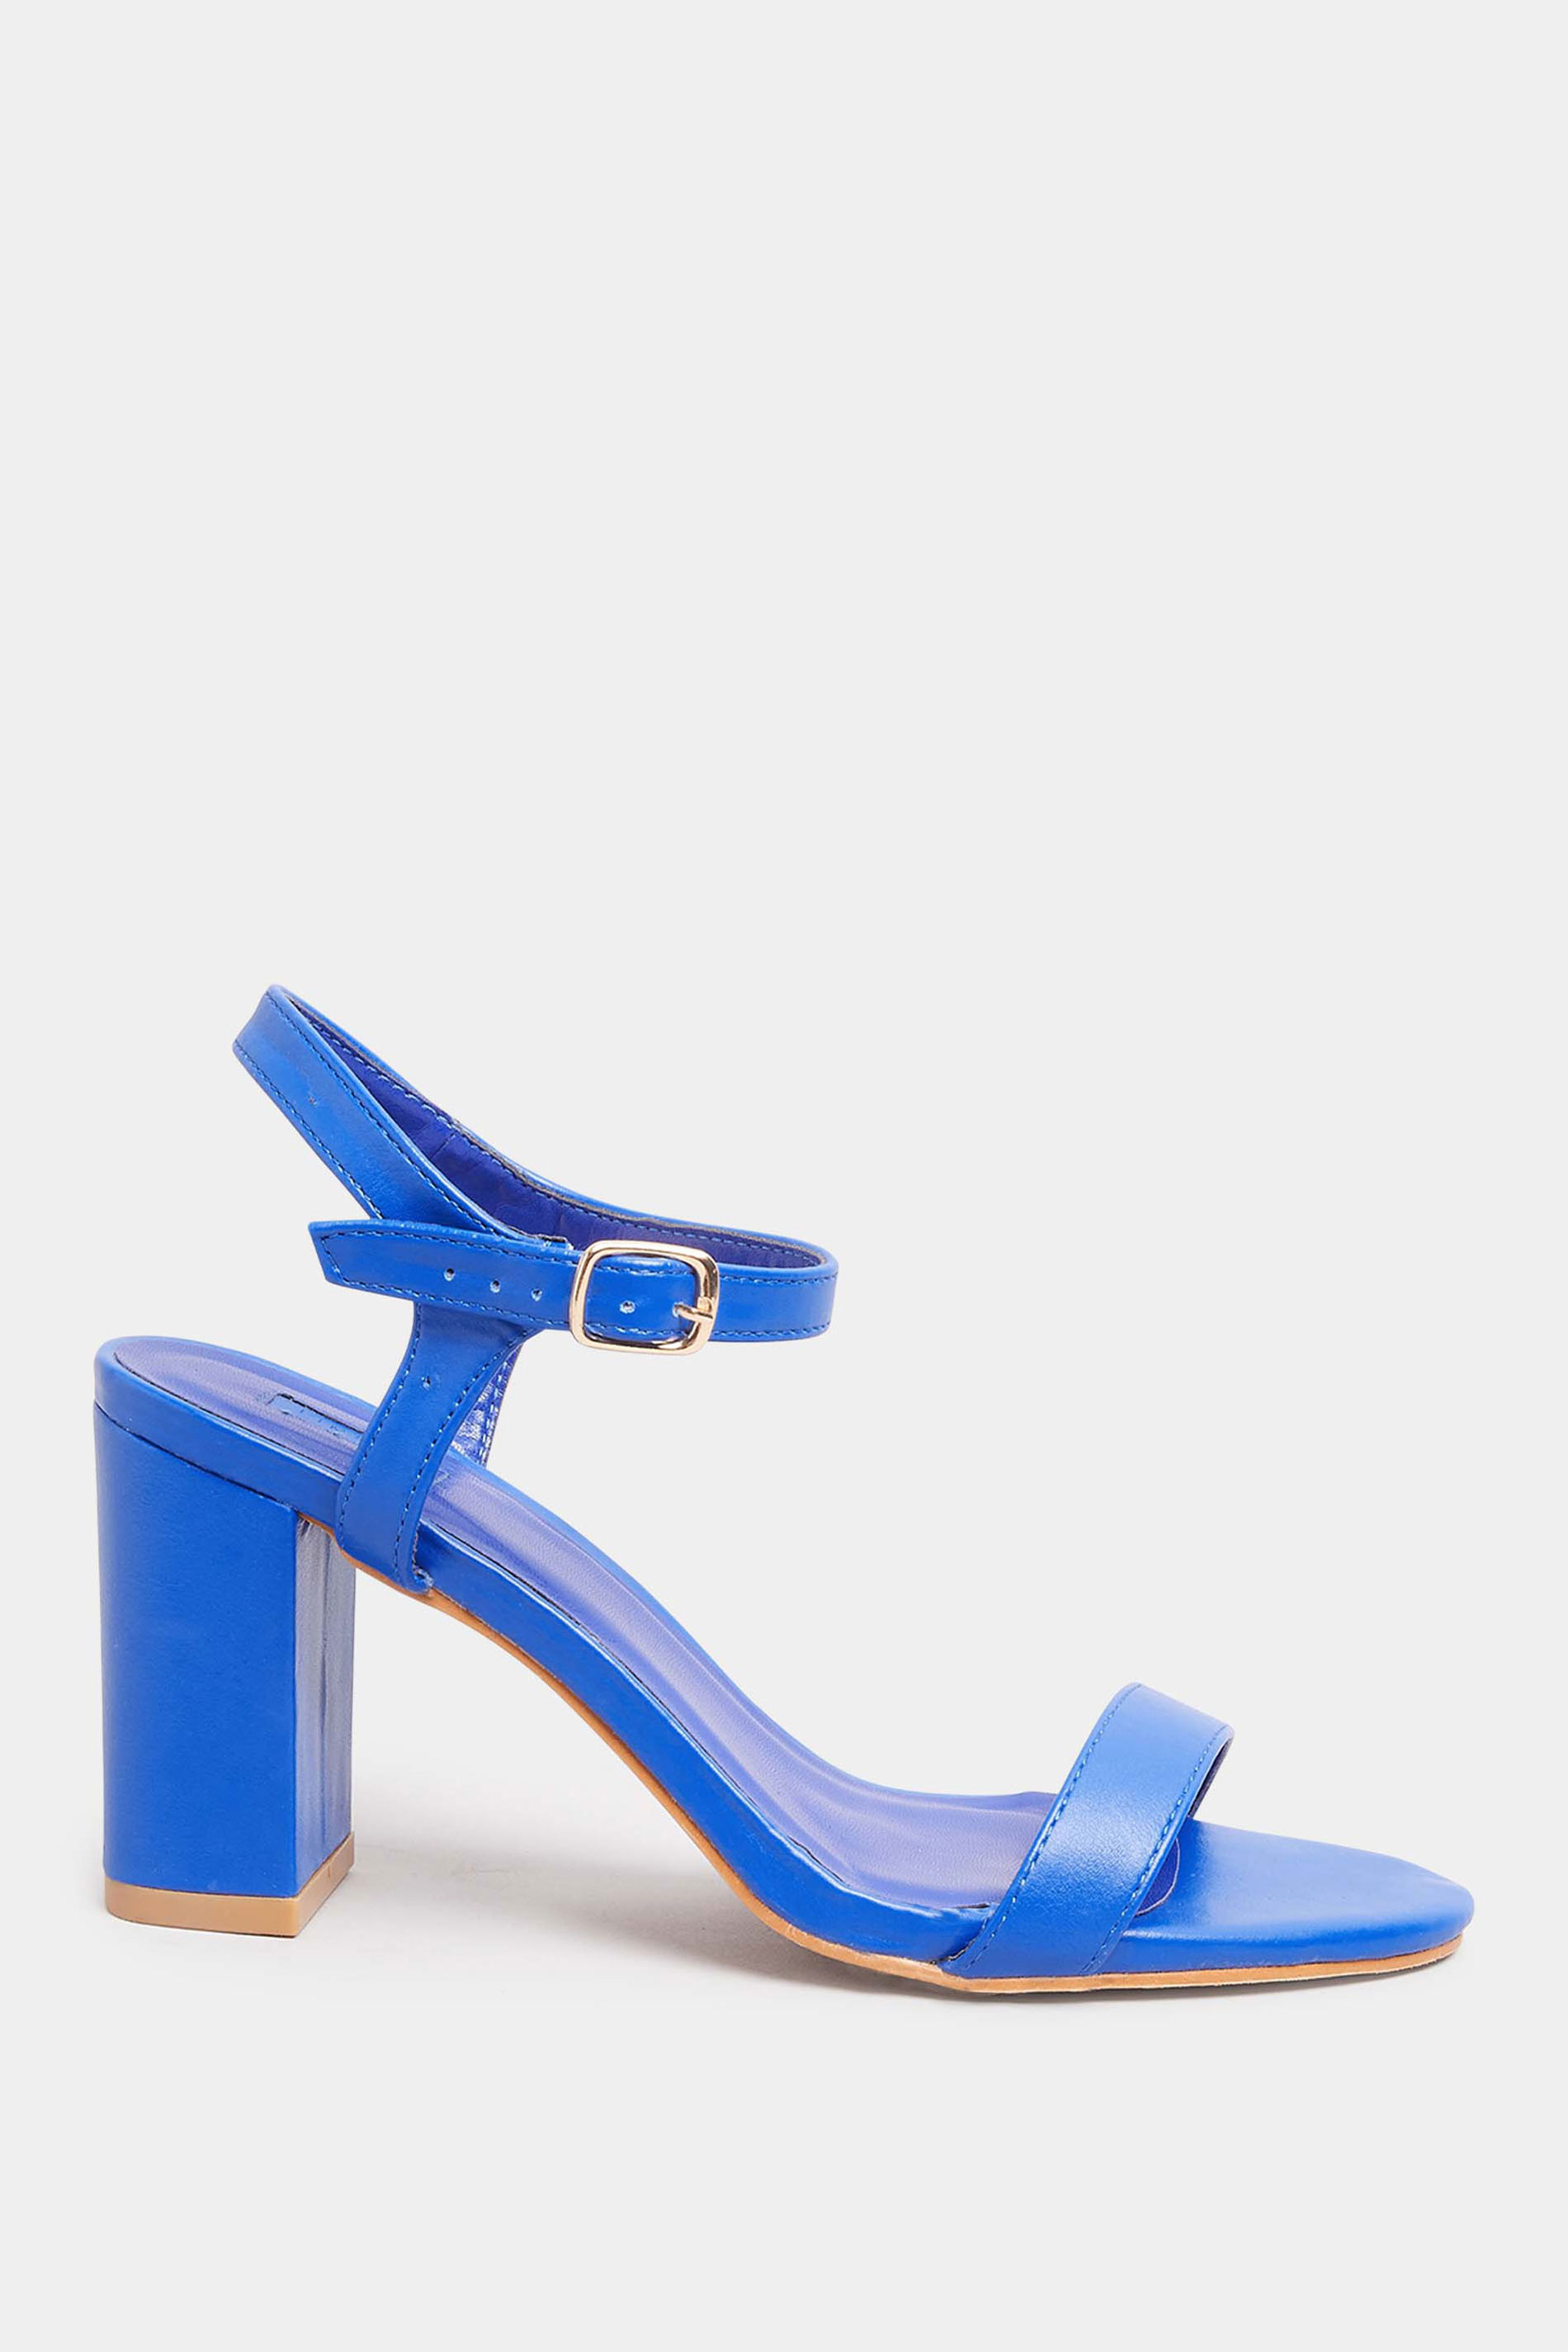 Blue High Heel Sandals - Ankle Strap Platforms - Satin Platforms - Lulus